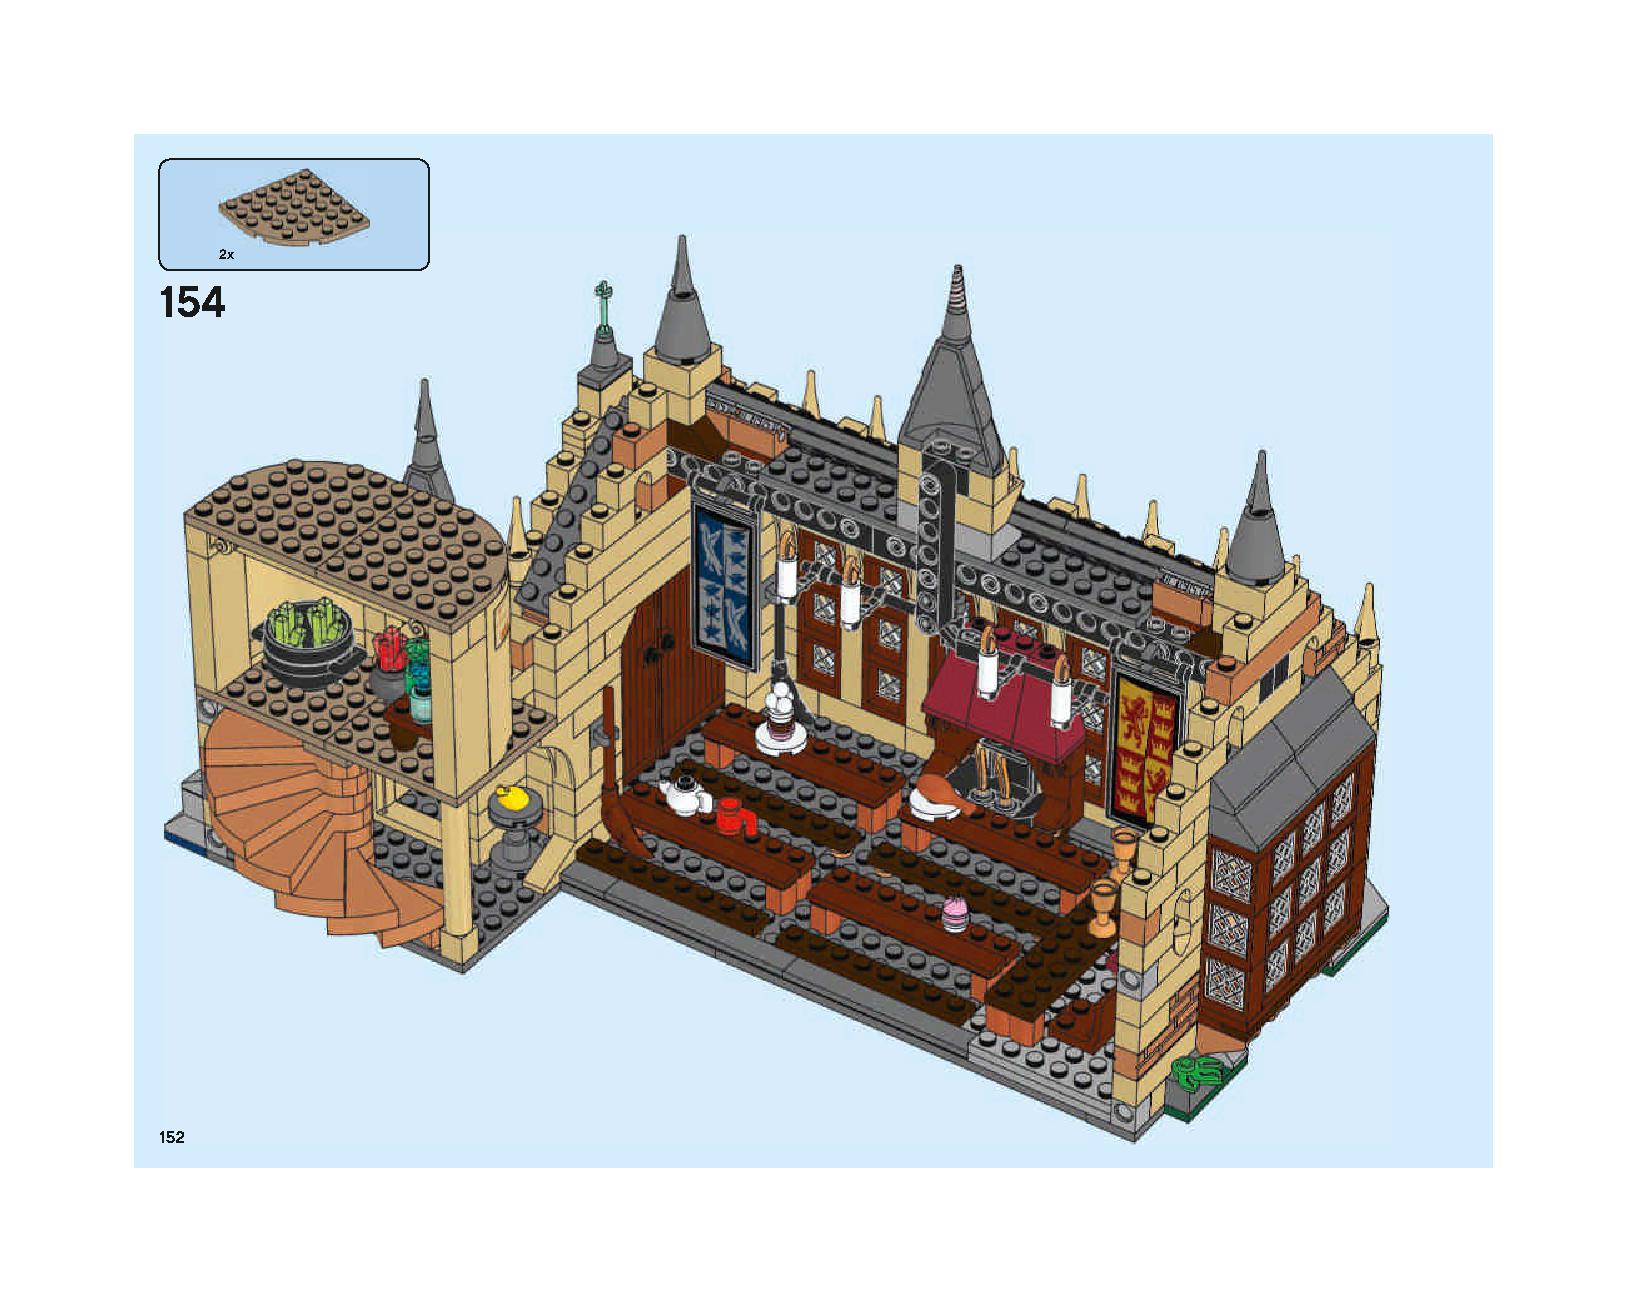 ホグワーツの大広間 75954 レゴの商品情報 レゴの説明書・組立方法 152 page